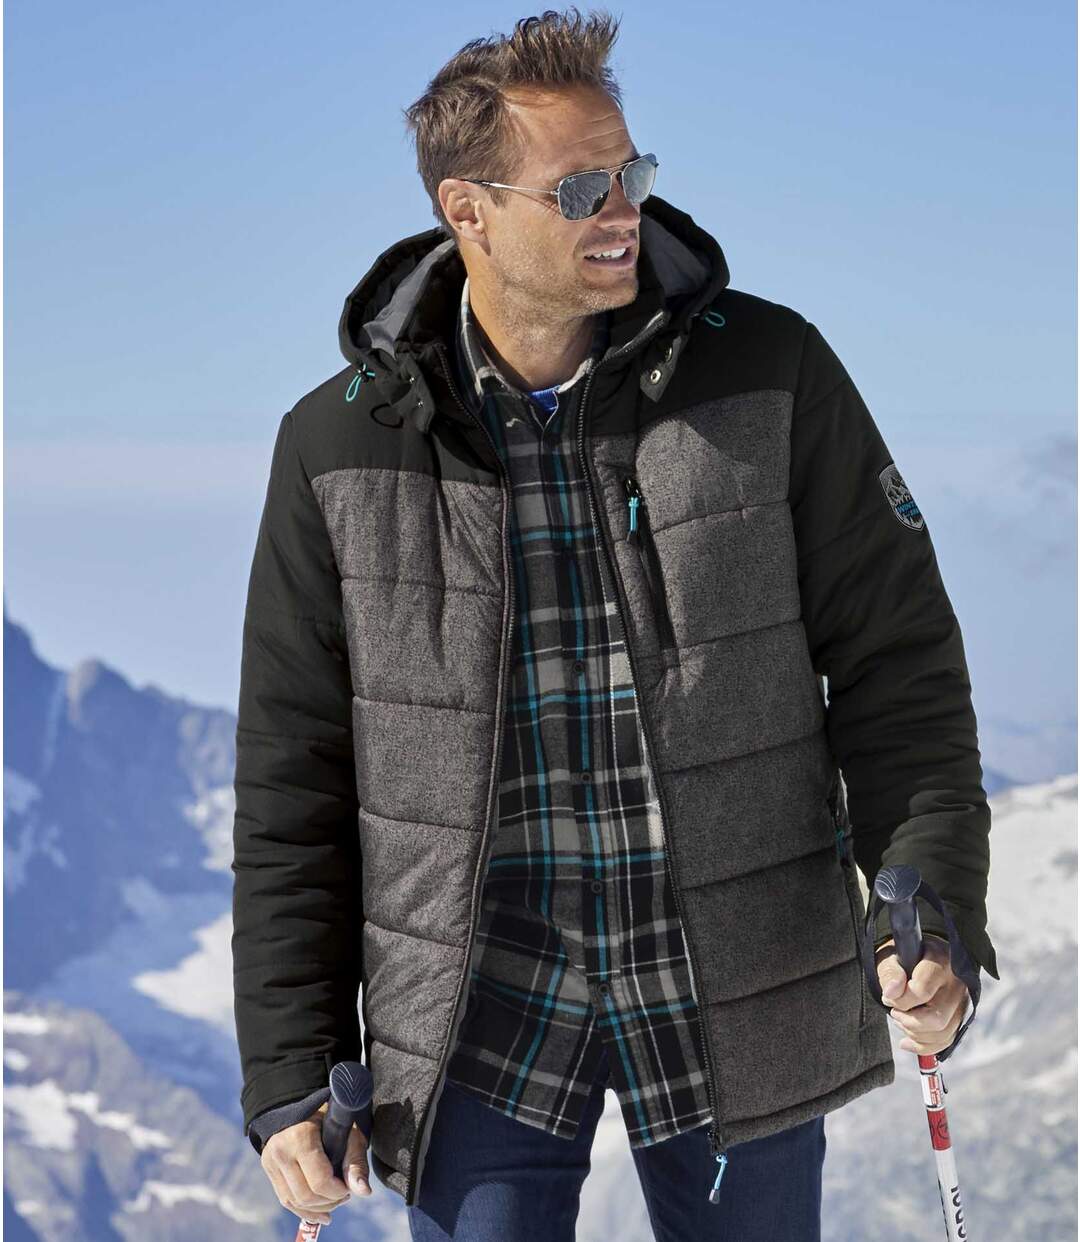 Men's Gray & Black Active-Utility Puffer Jacket with Hood - Water-Repellent - Full Zip Atlas For Men